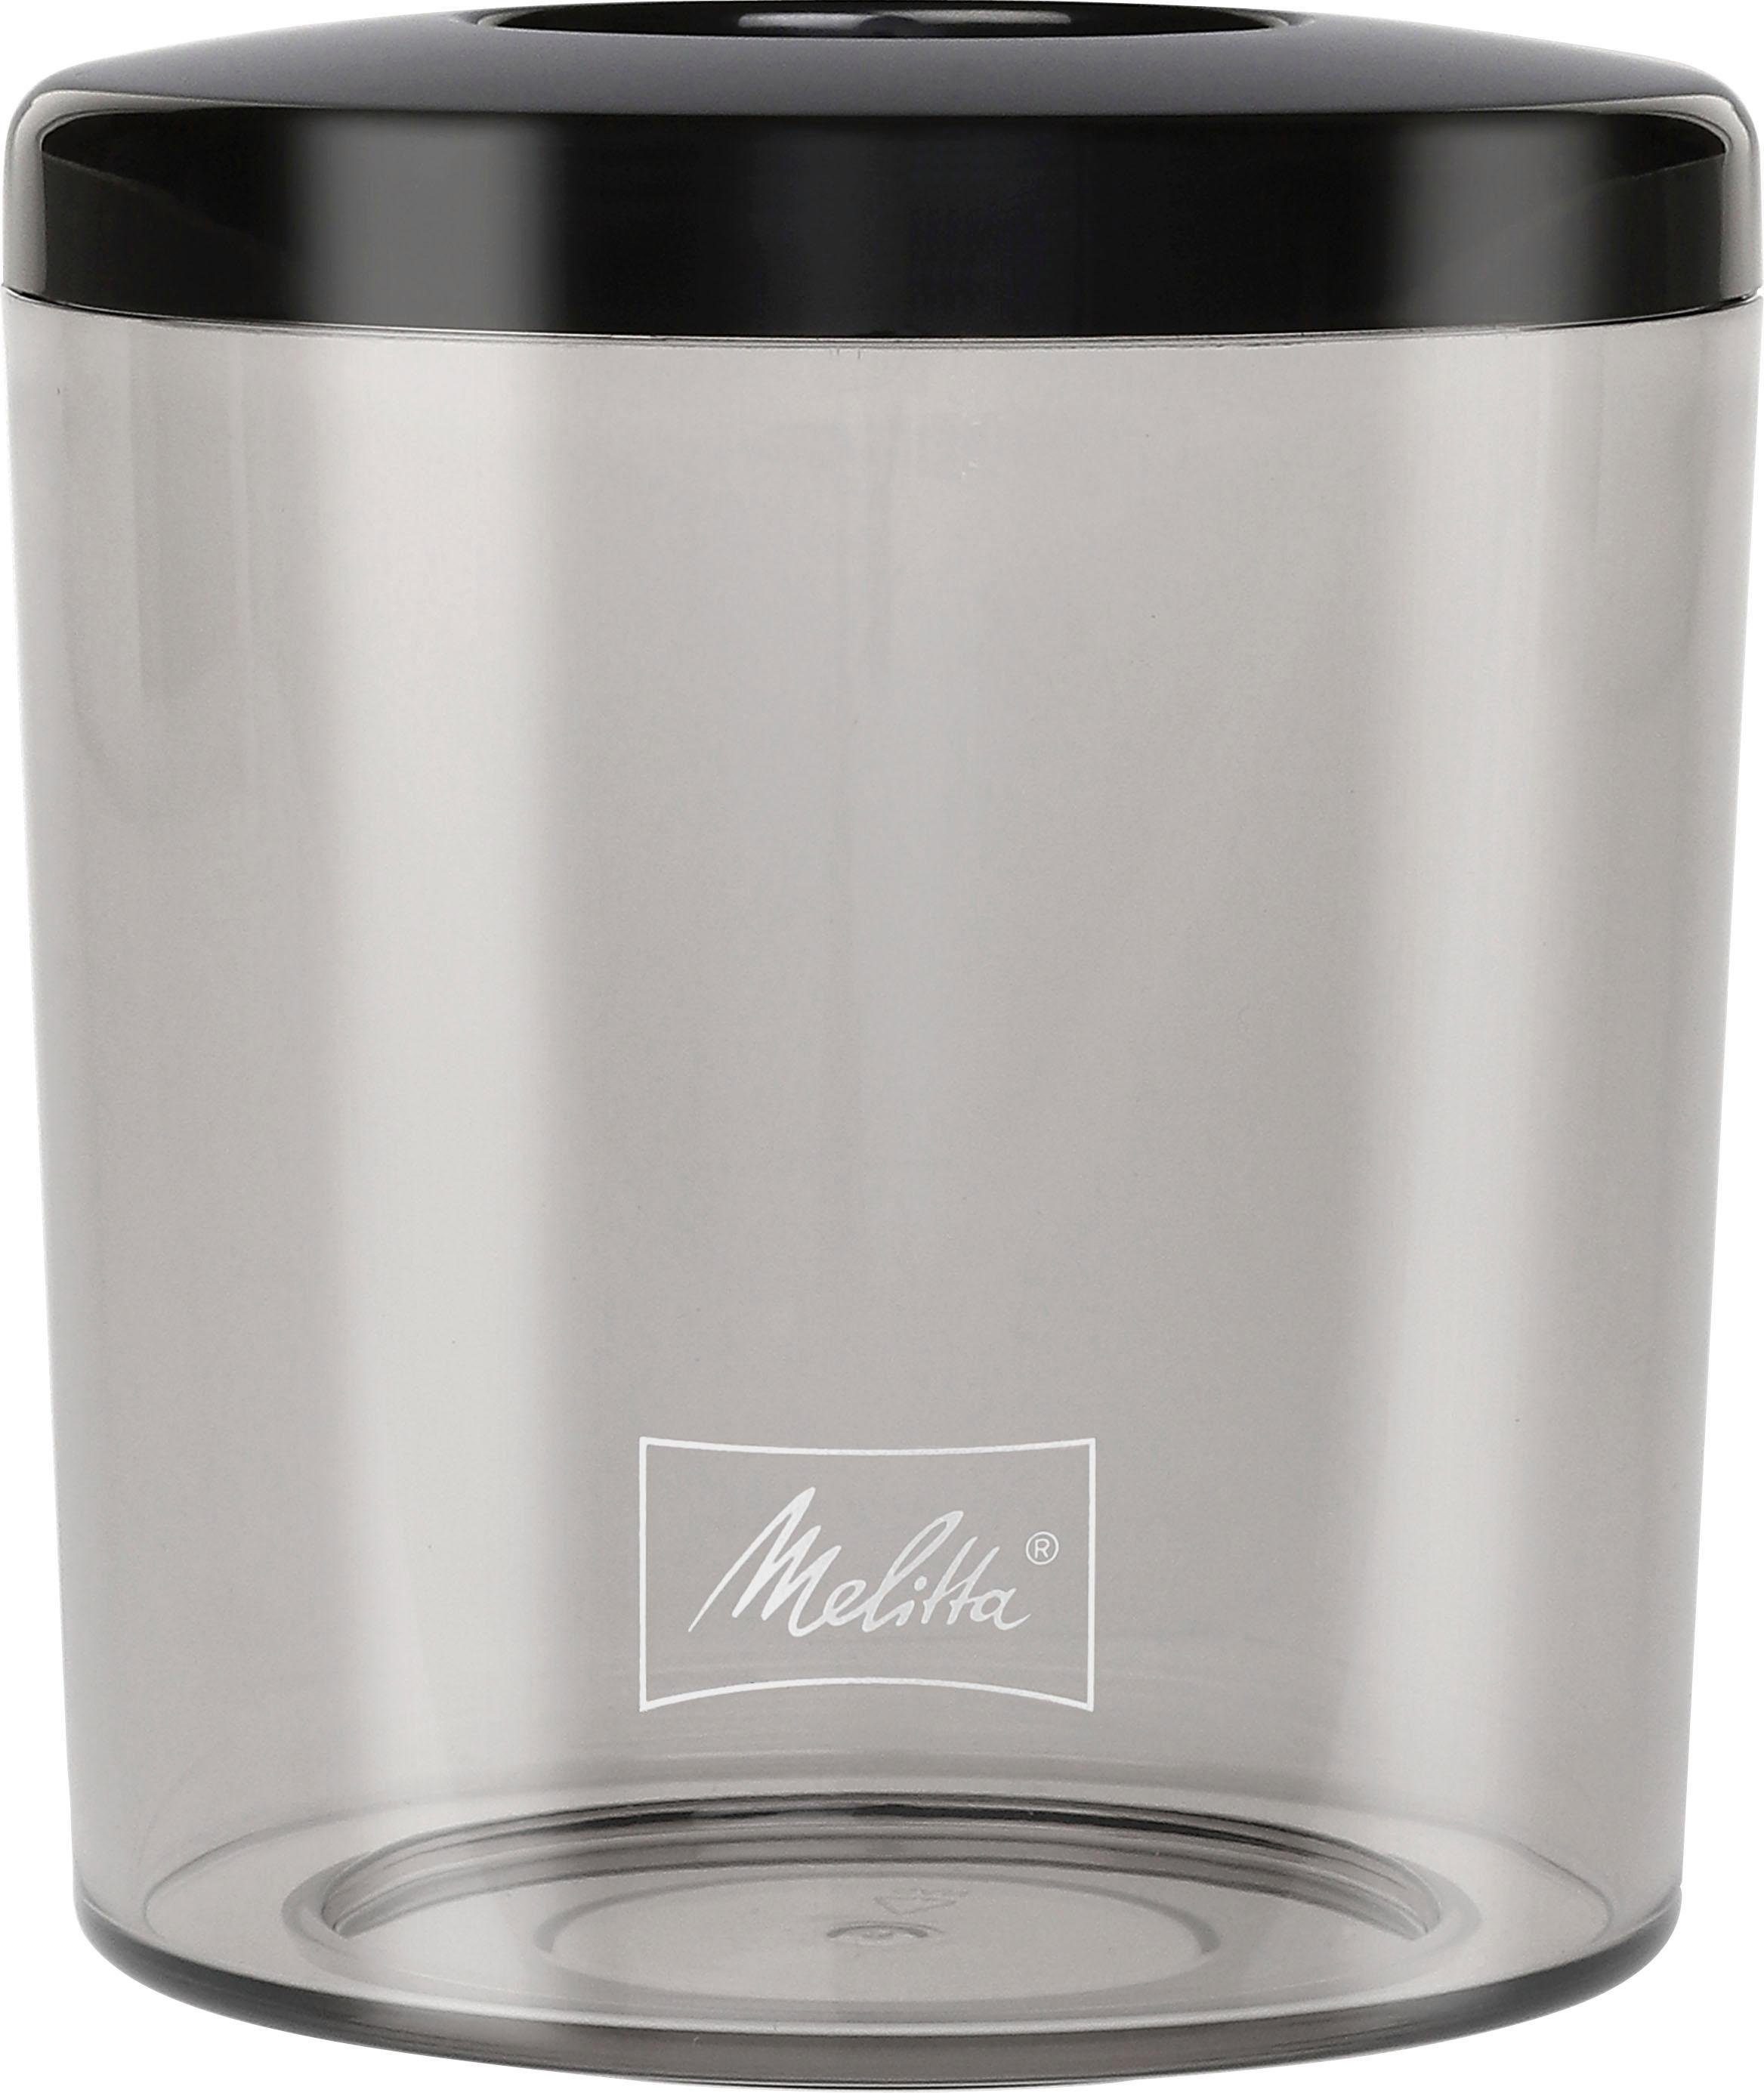 Melitta Kaffeemühle Calibra 1027-01 schwarz-Edelstahl, Kegelmahlwerk, 160 W, 375 Bohnenbehälter g